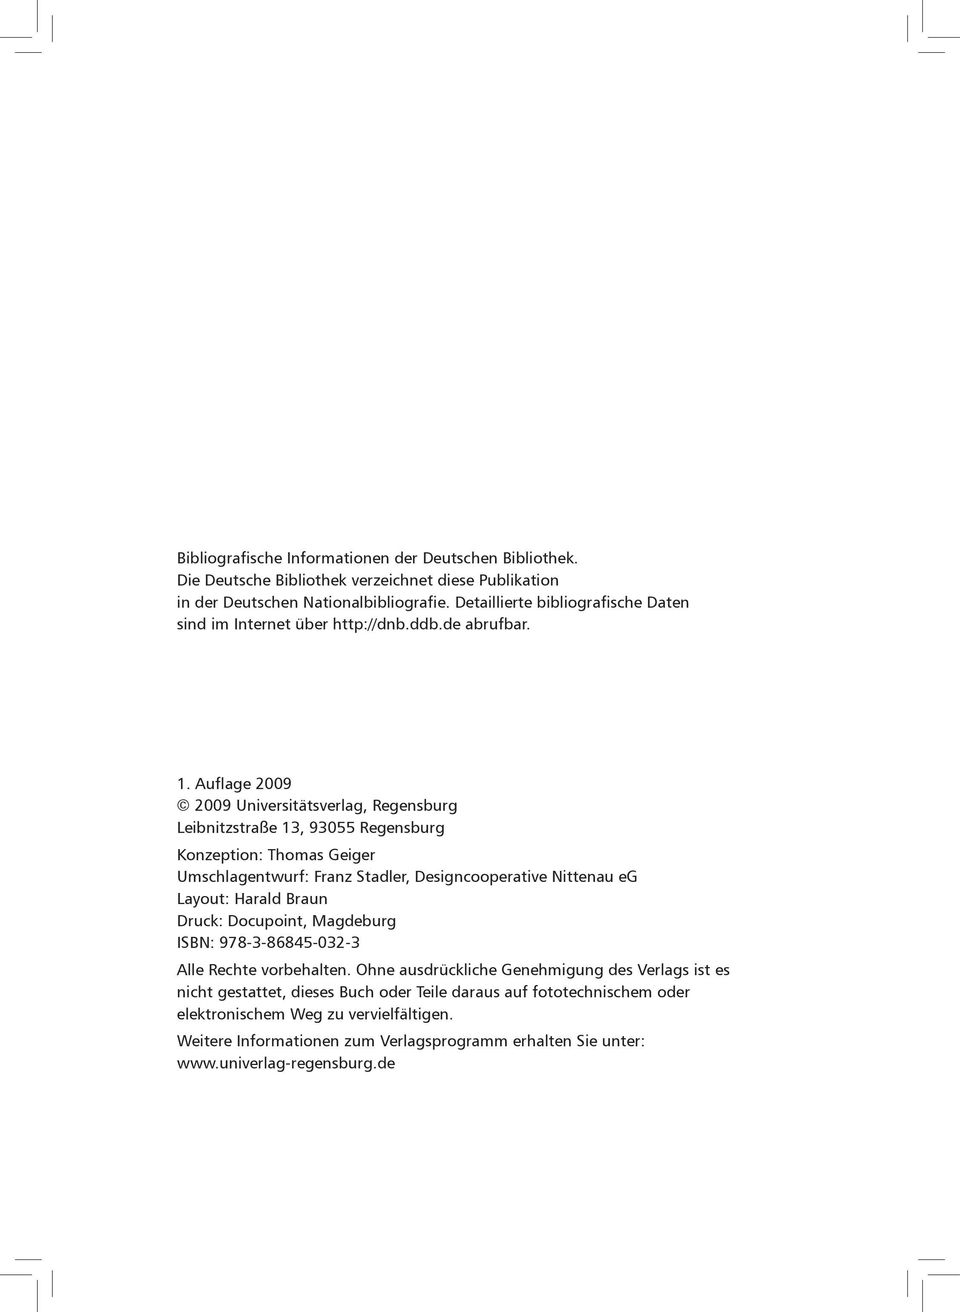 Auflage 2009 2009 Universitätsverlag, Regensburg Leibnitzstraße 13, 93055 Regensburg Konzeption: Thomas Geiger Umschlagentwurf: Franz Stadler, Designcooperative Nittenau eg Layout: Harald